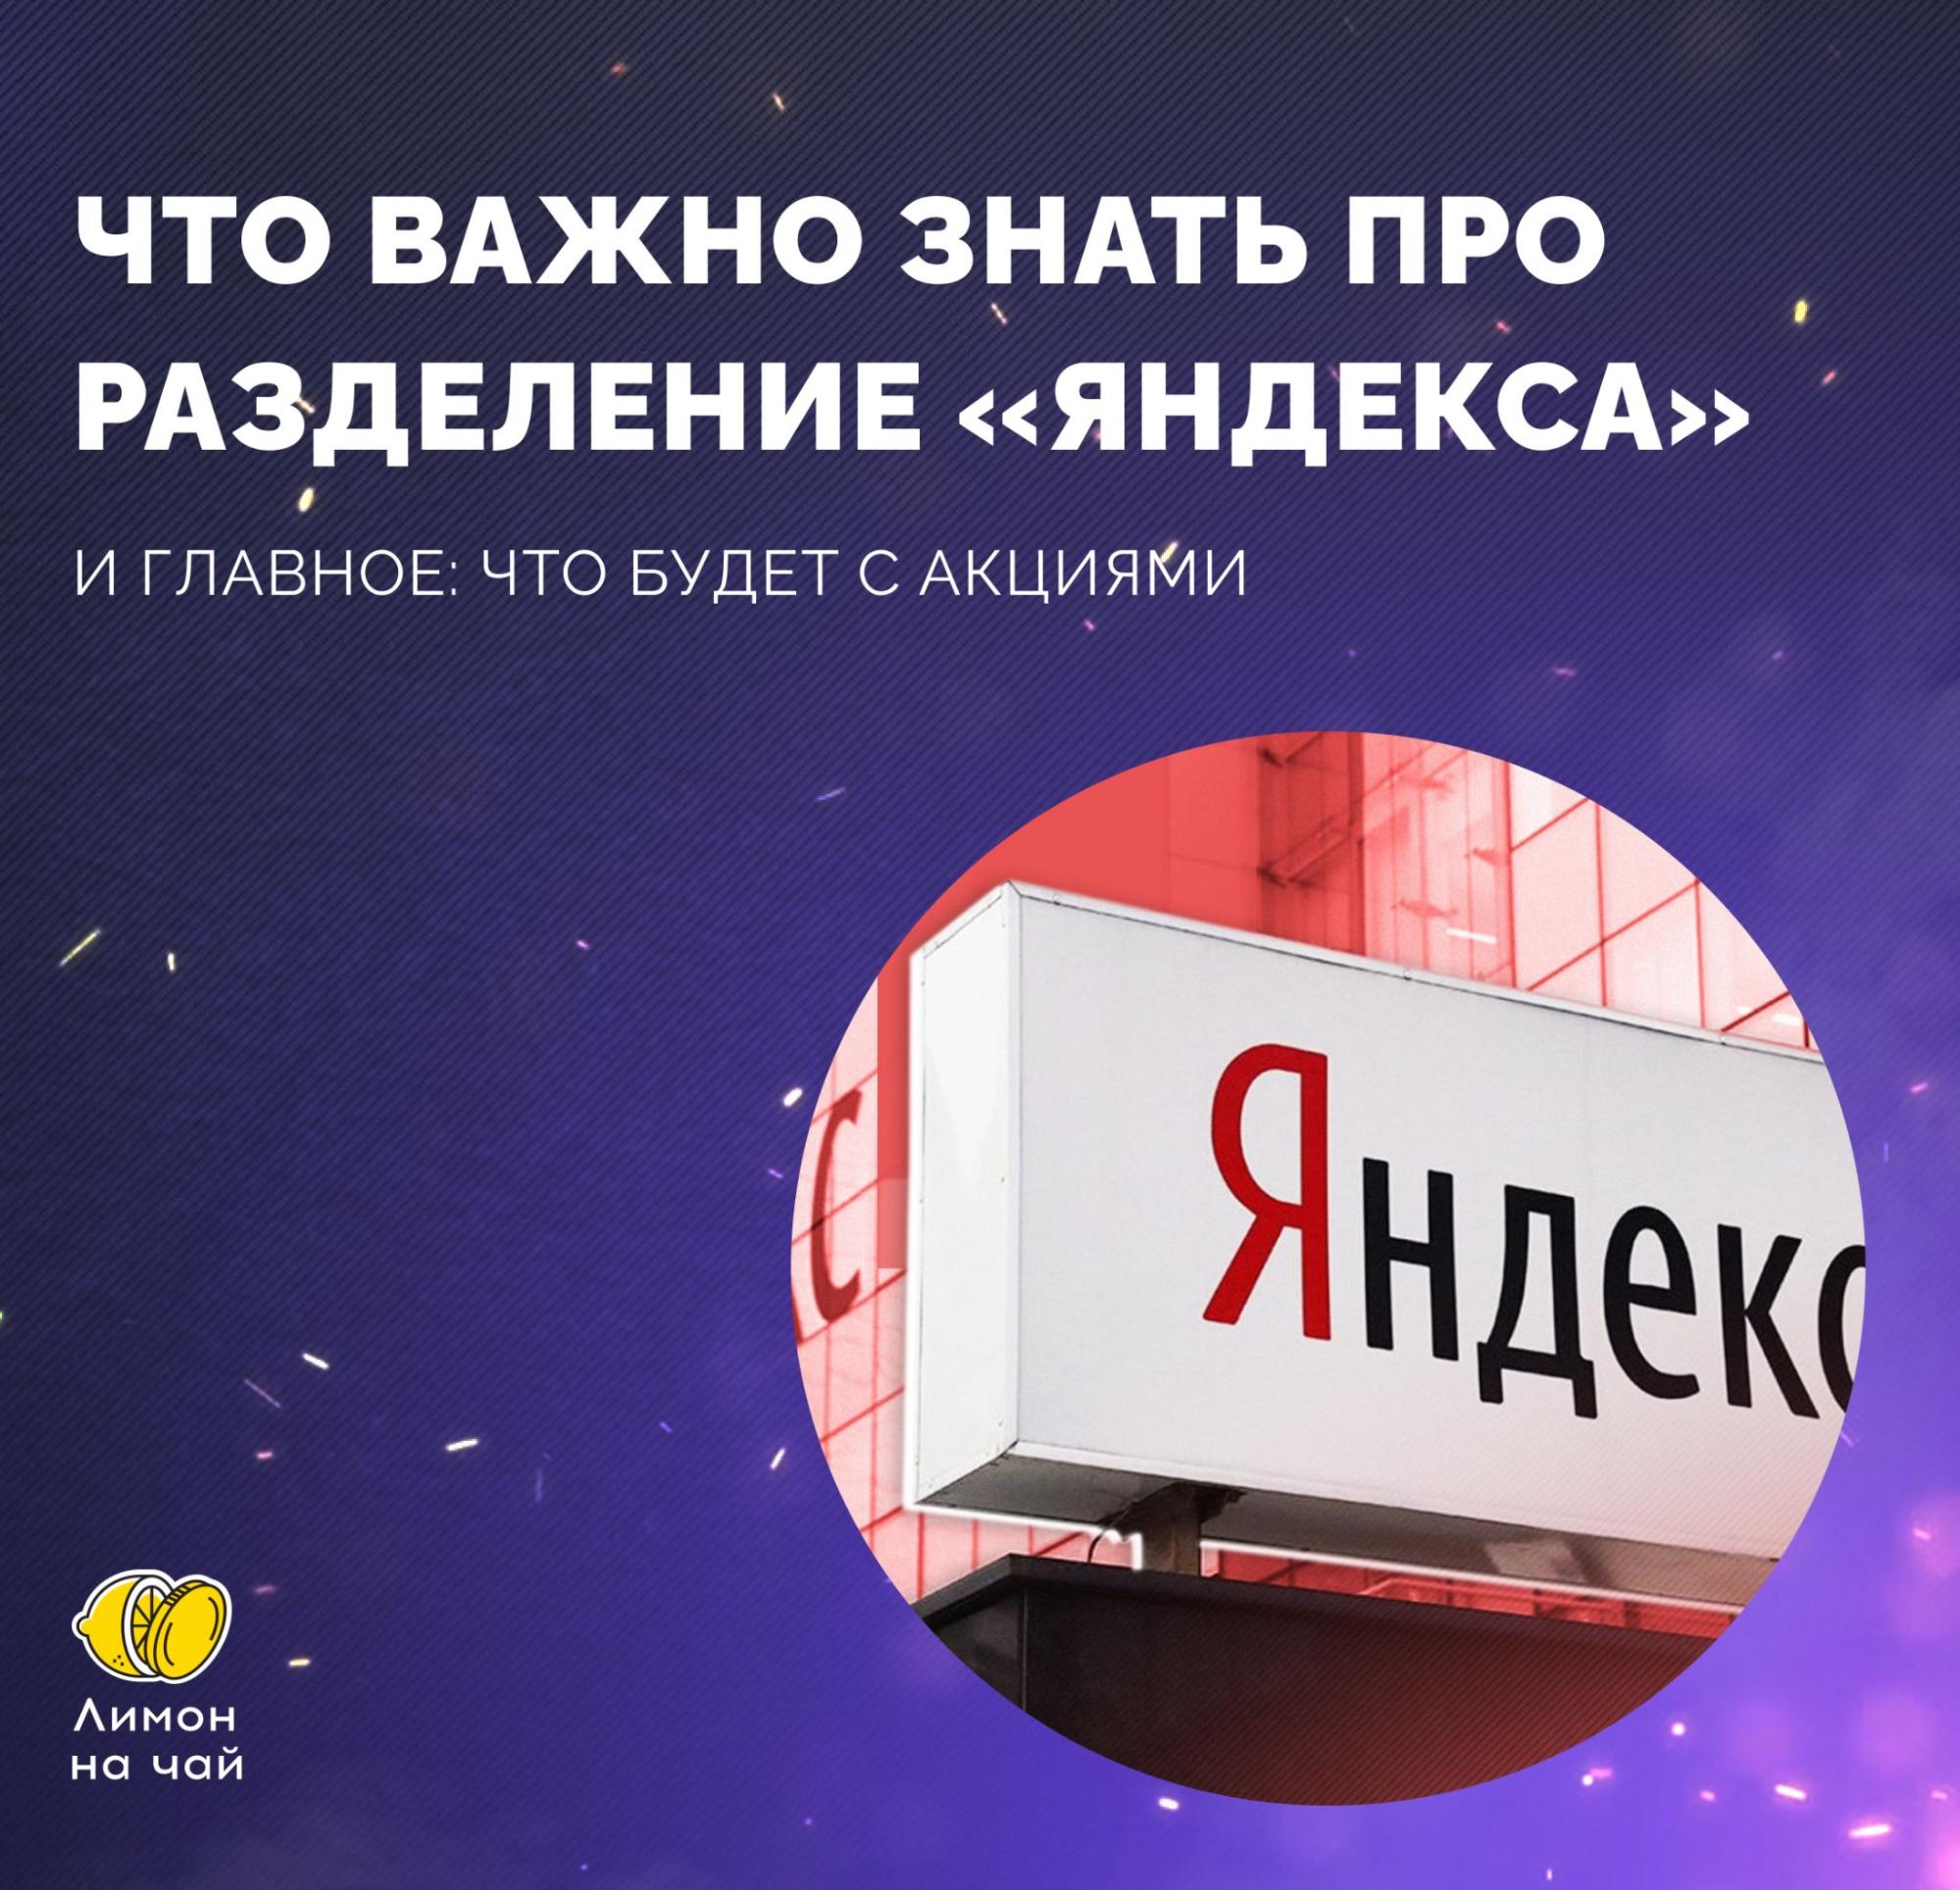 «Яндекс» разделят на две части. Шеф, всё пропало?